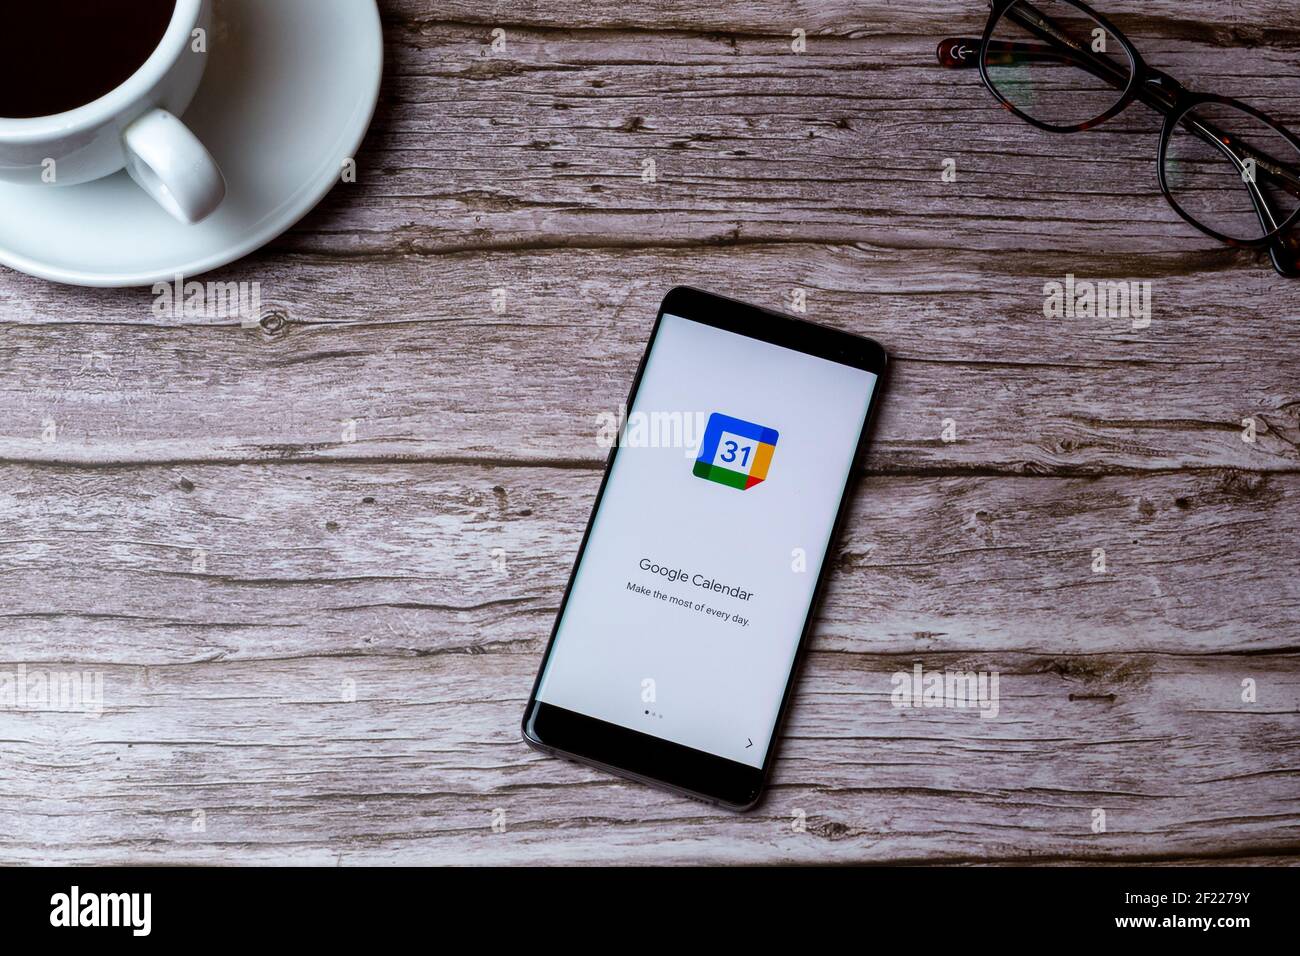 0A teléfono móvil o teléfono celular colocado sobre una madera Mesa o  escritorio con la aplicación Google Calendar abierta Fotografía de stock -  Alamy